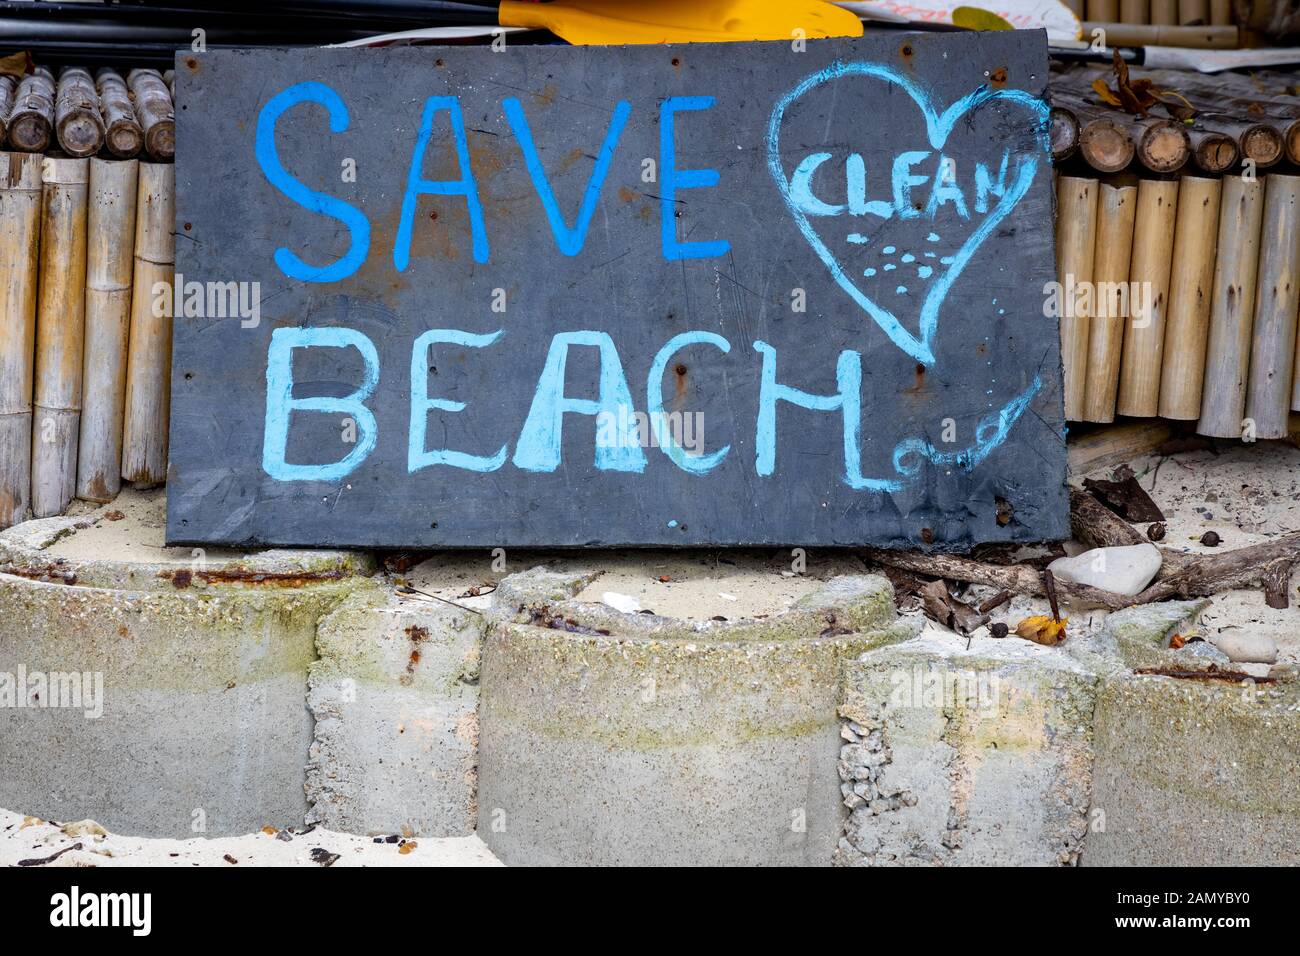 Enregistrer Beach. Plage propre message écrit à l'encre bleue sur un tableau noir à une plage de l'île Phi Phi, en Thaïlande. Banque D'Images